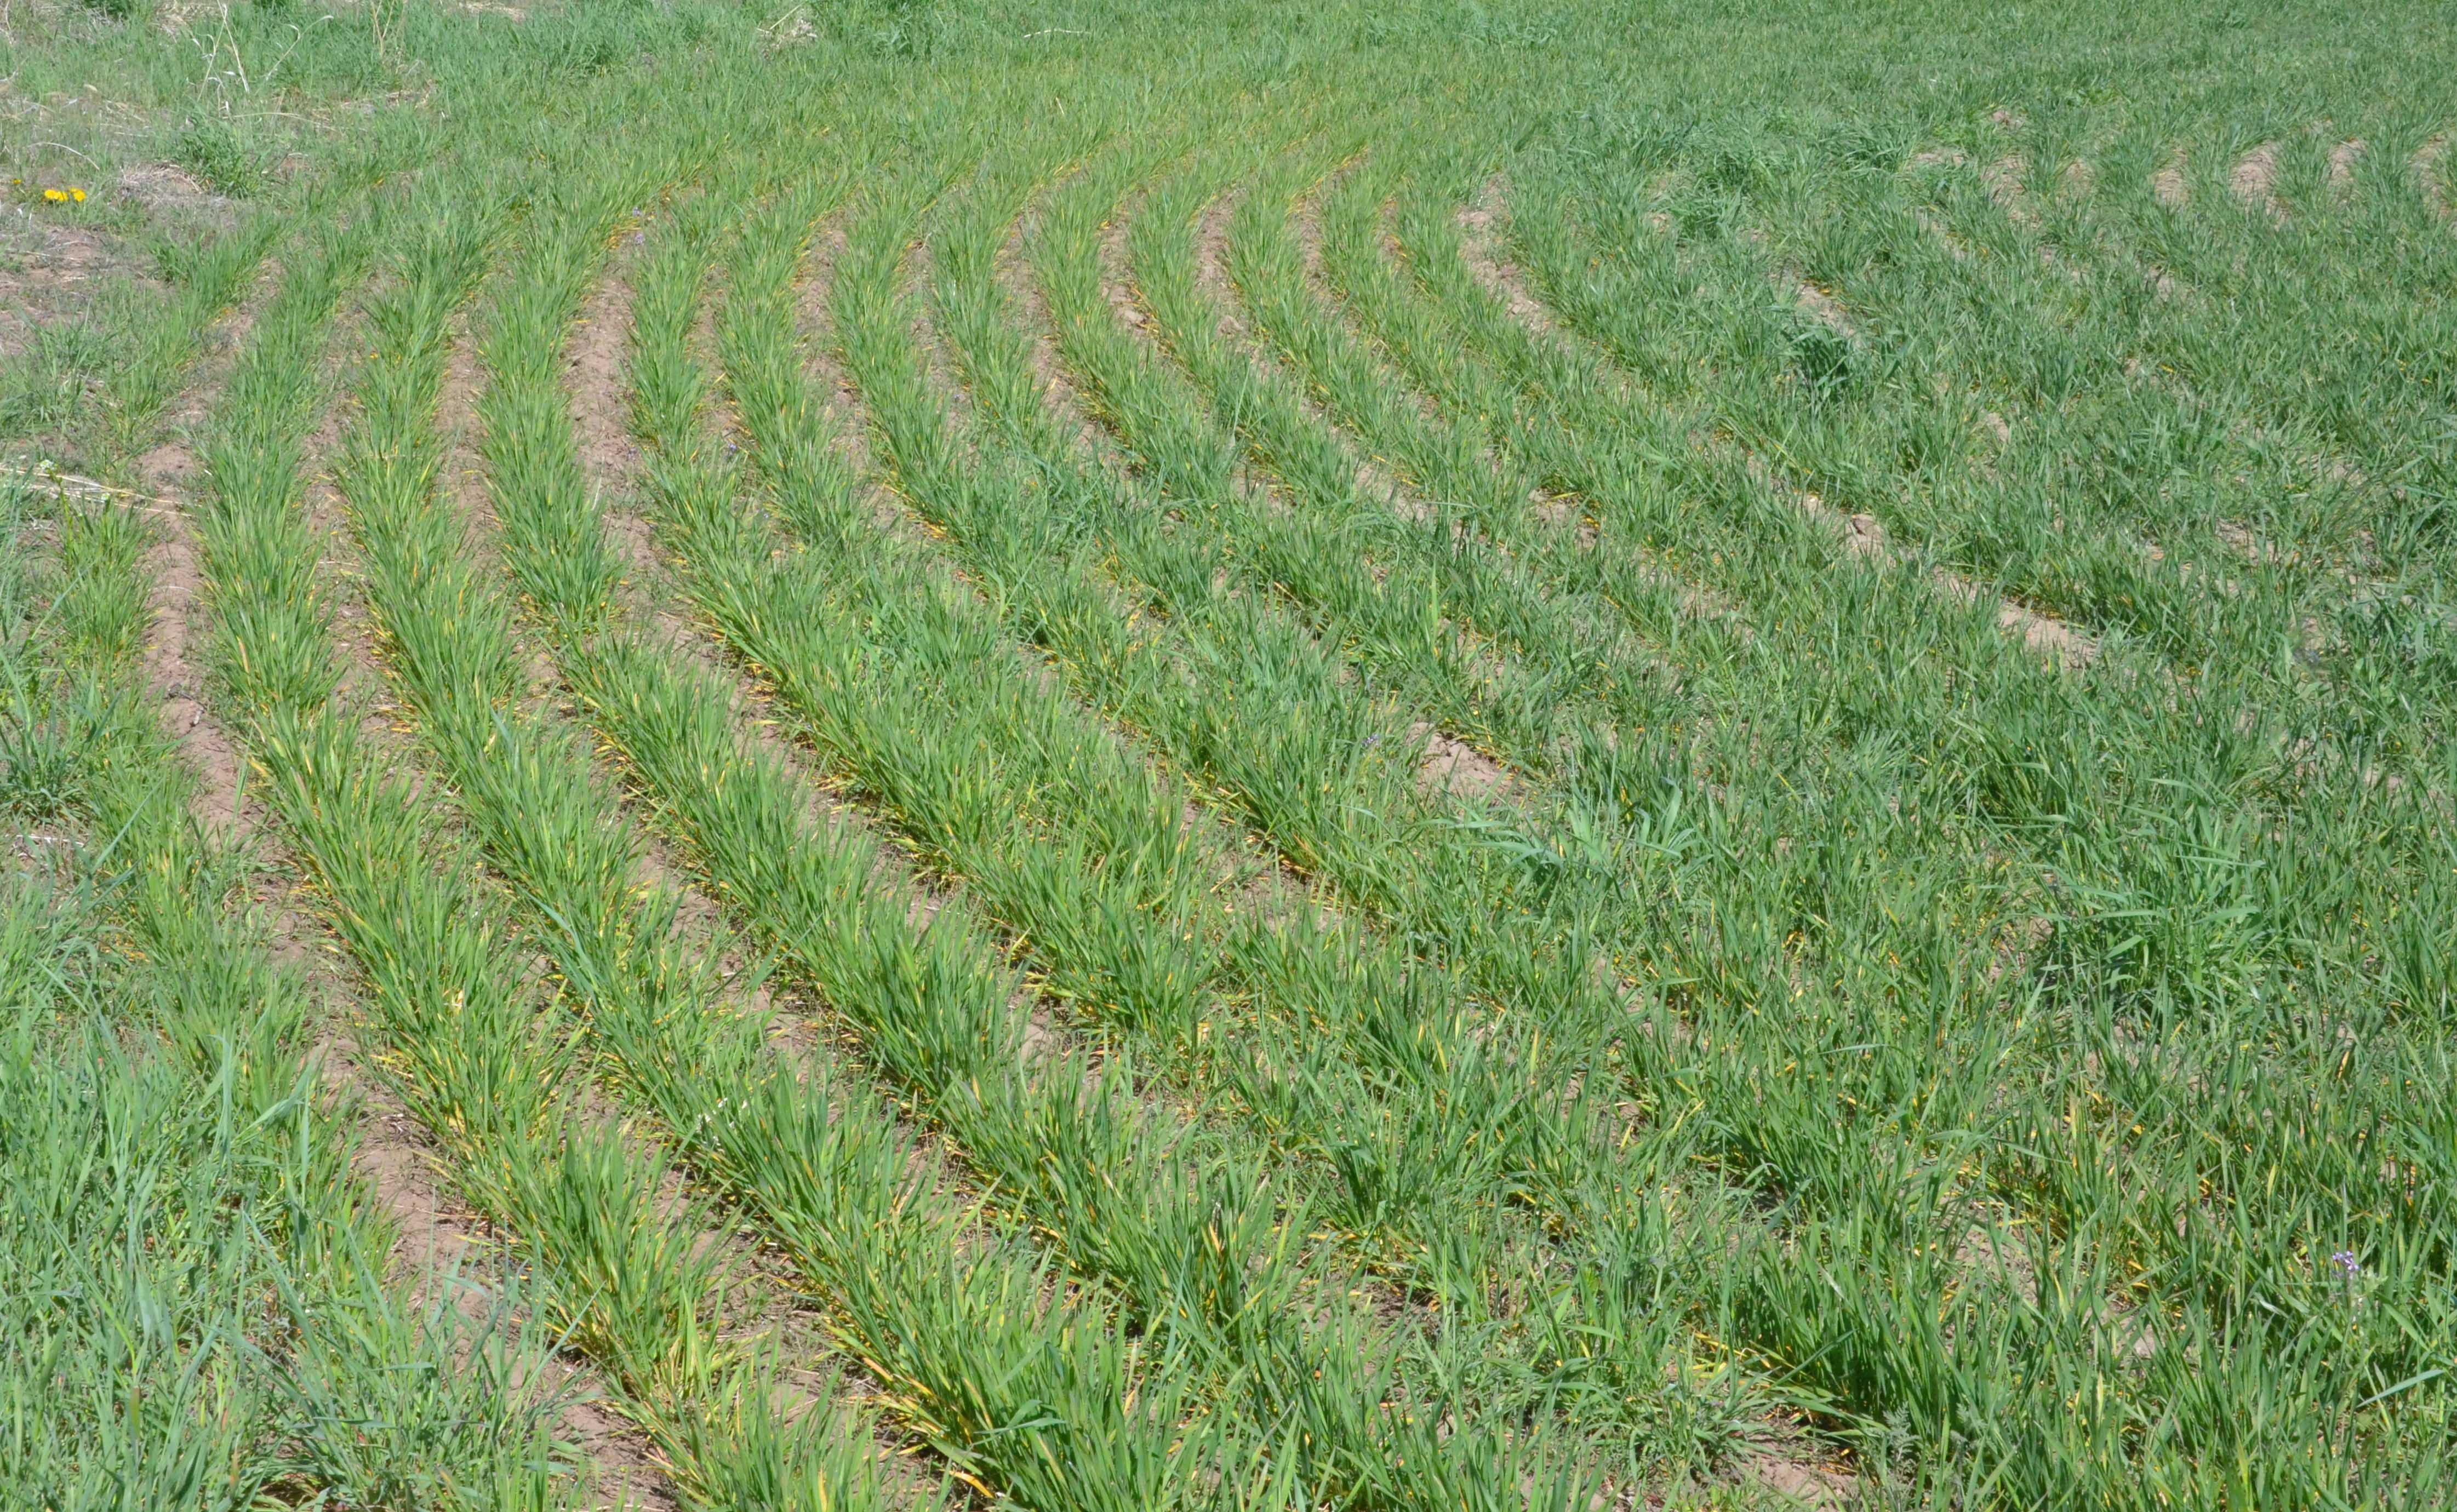 Wheat field (in April) showing symptoms of wheat streak mosaic